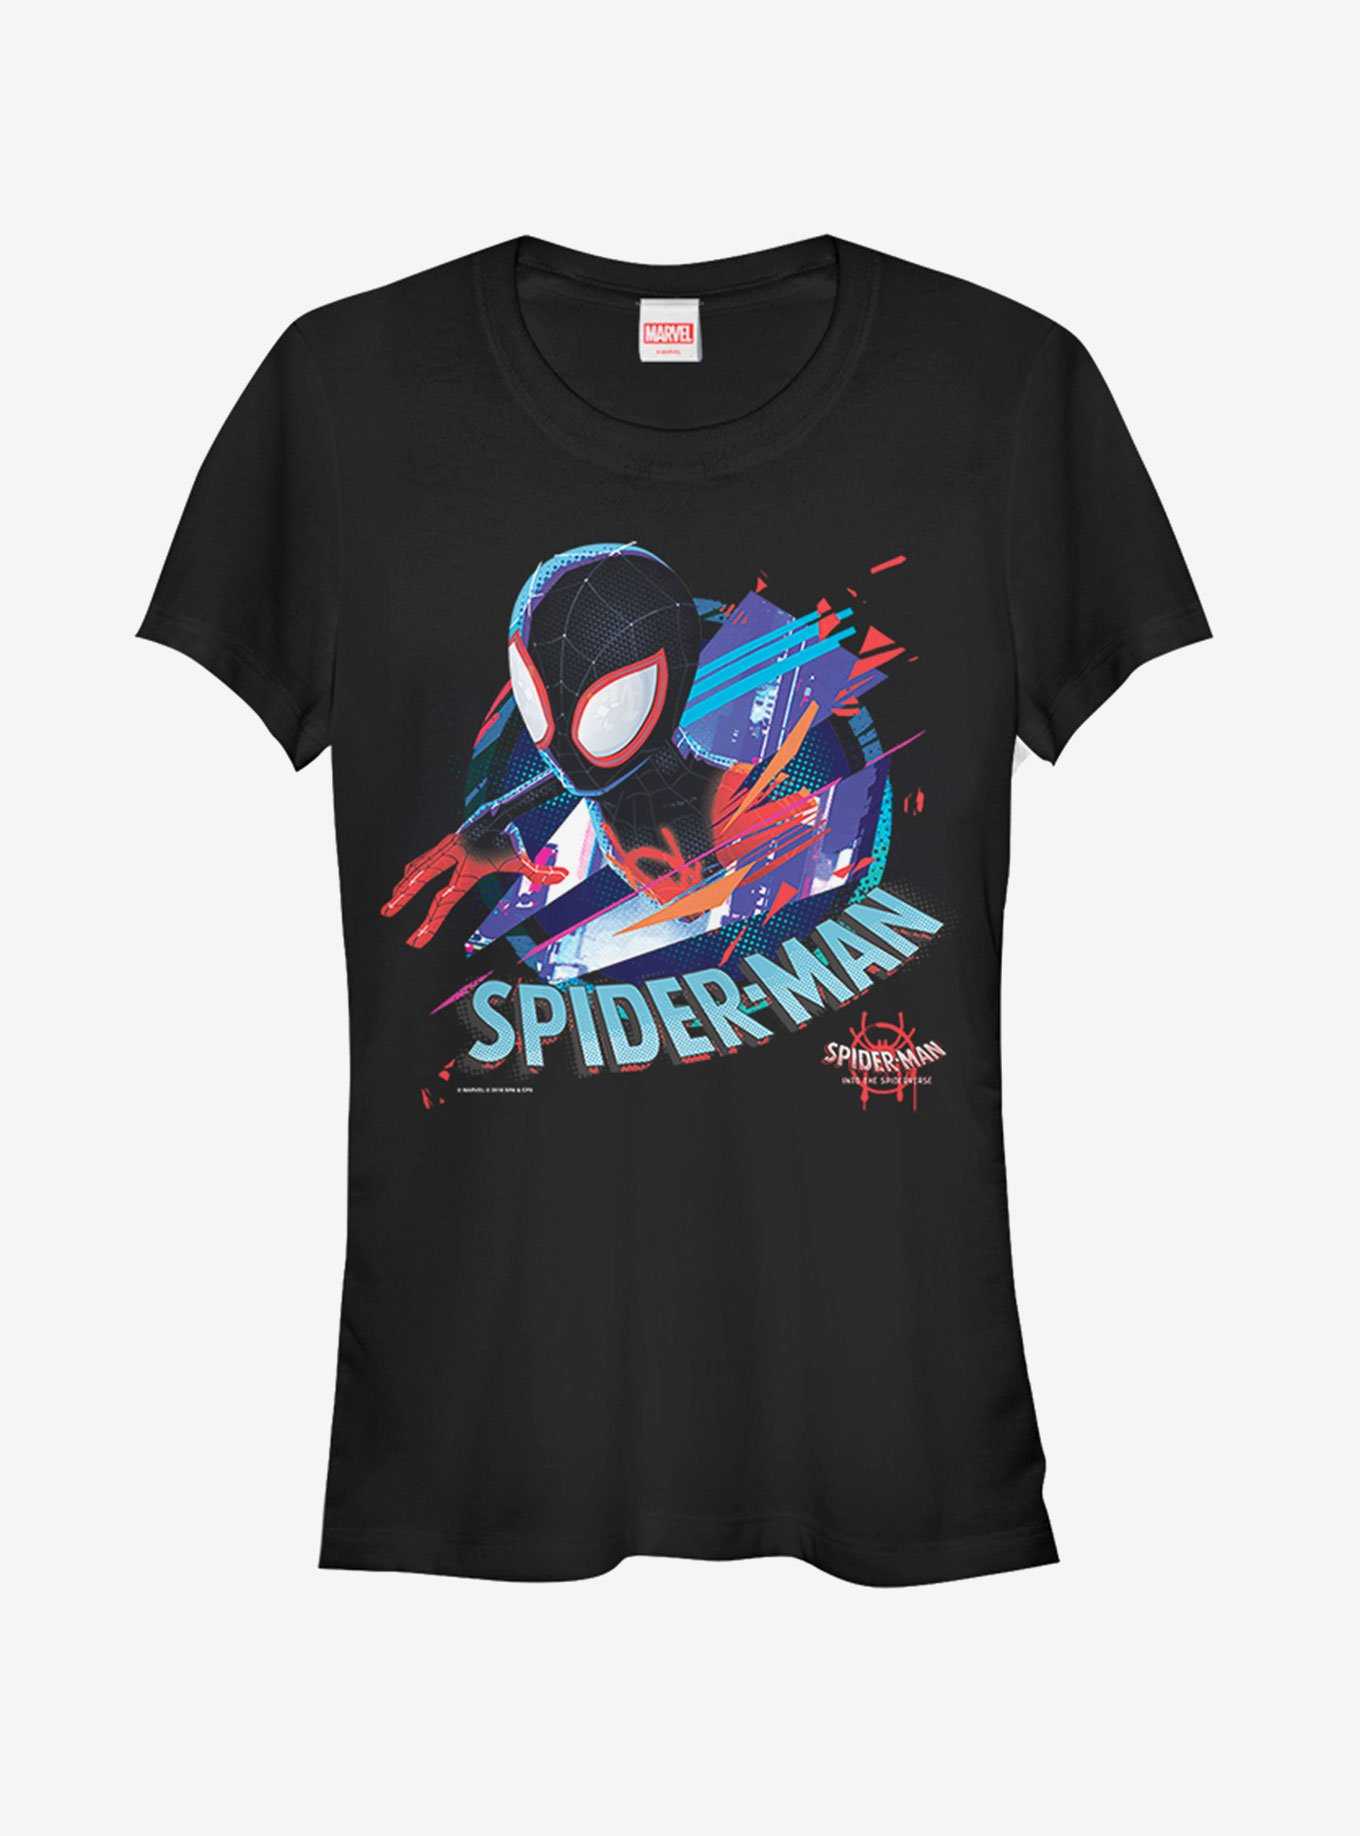 Marvel Spider-Man Spider-Verse Cracked Spider Womens T-Shirt, , hi-res